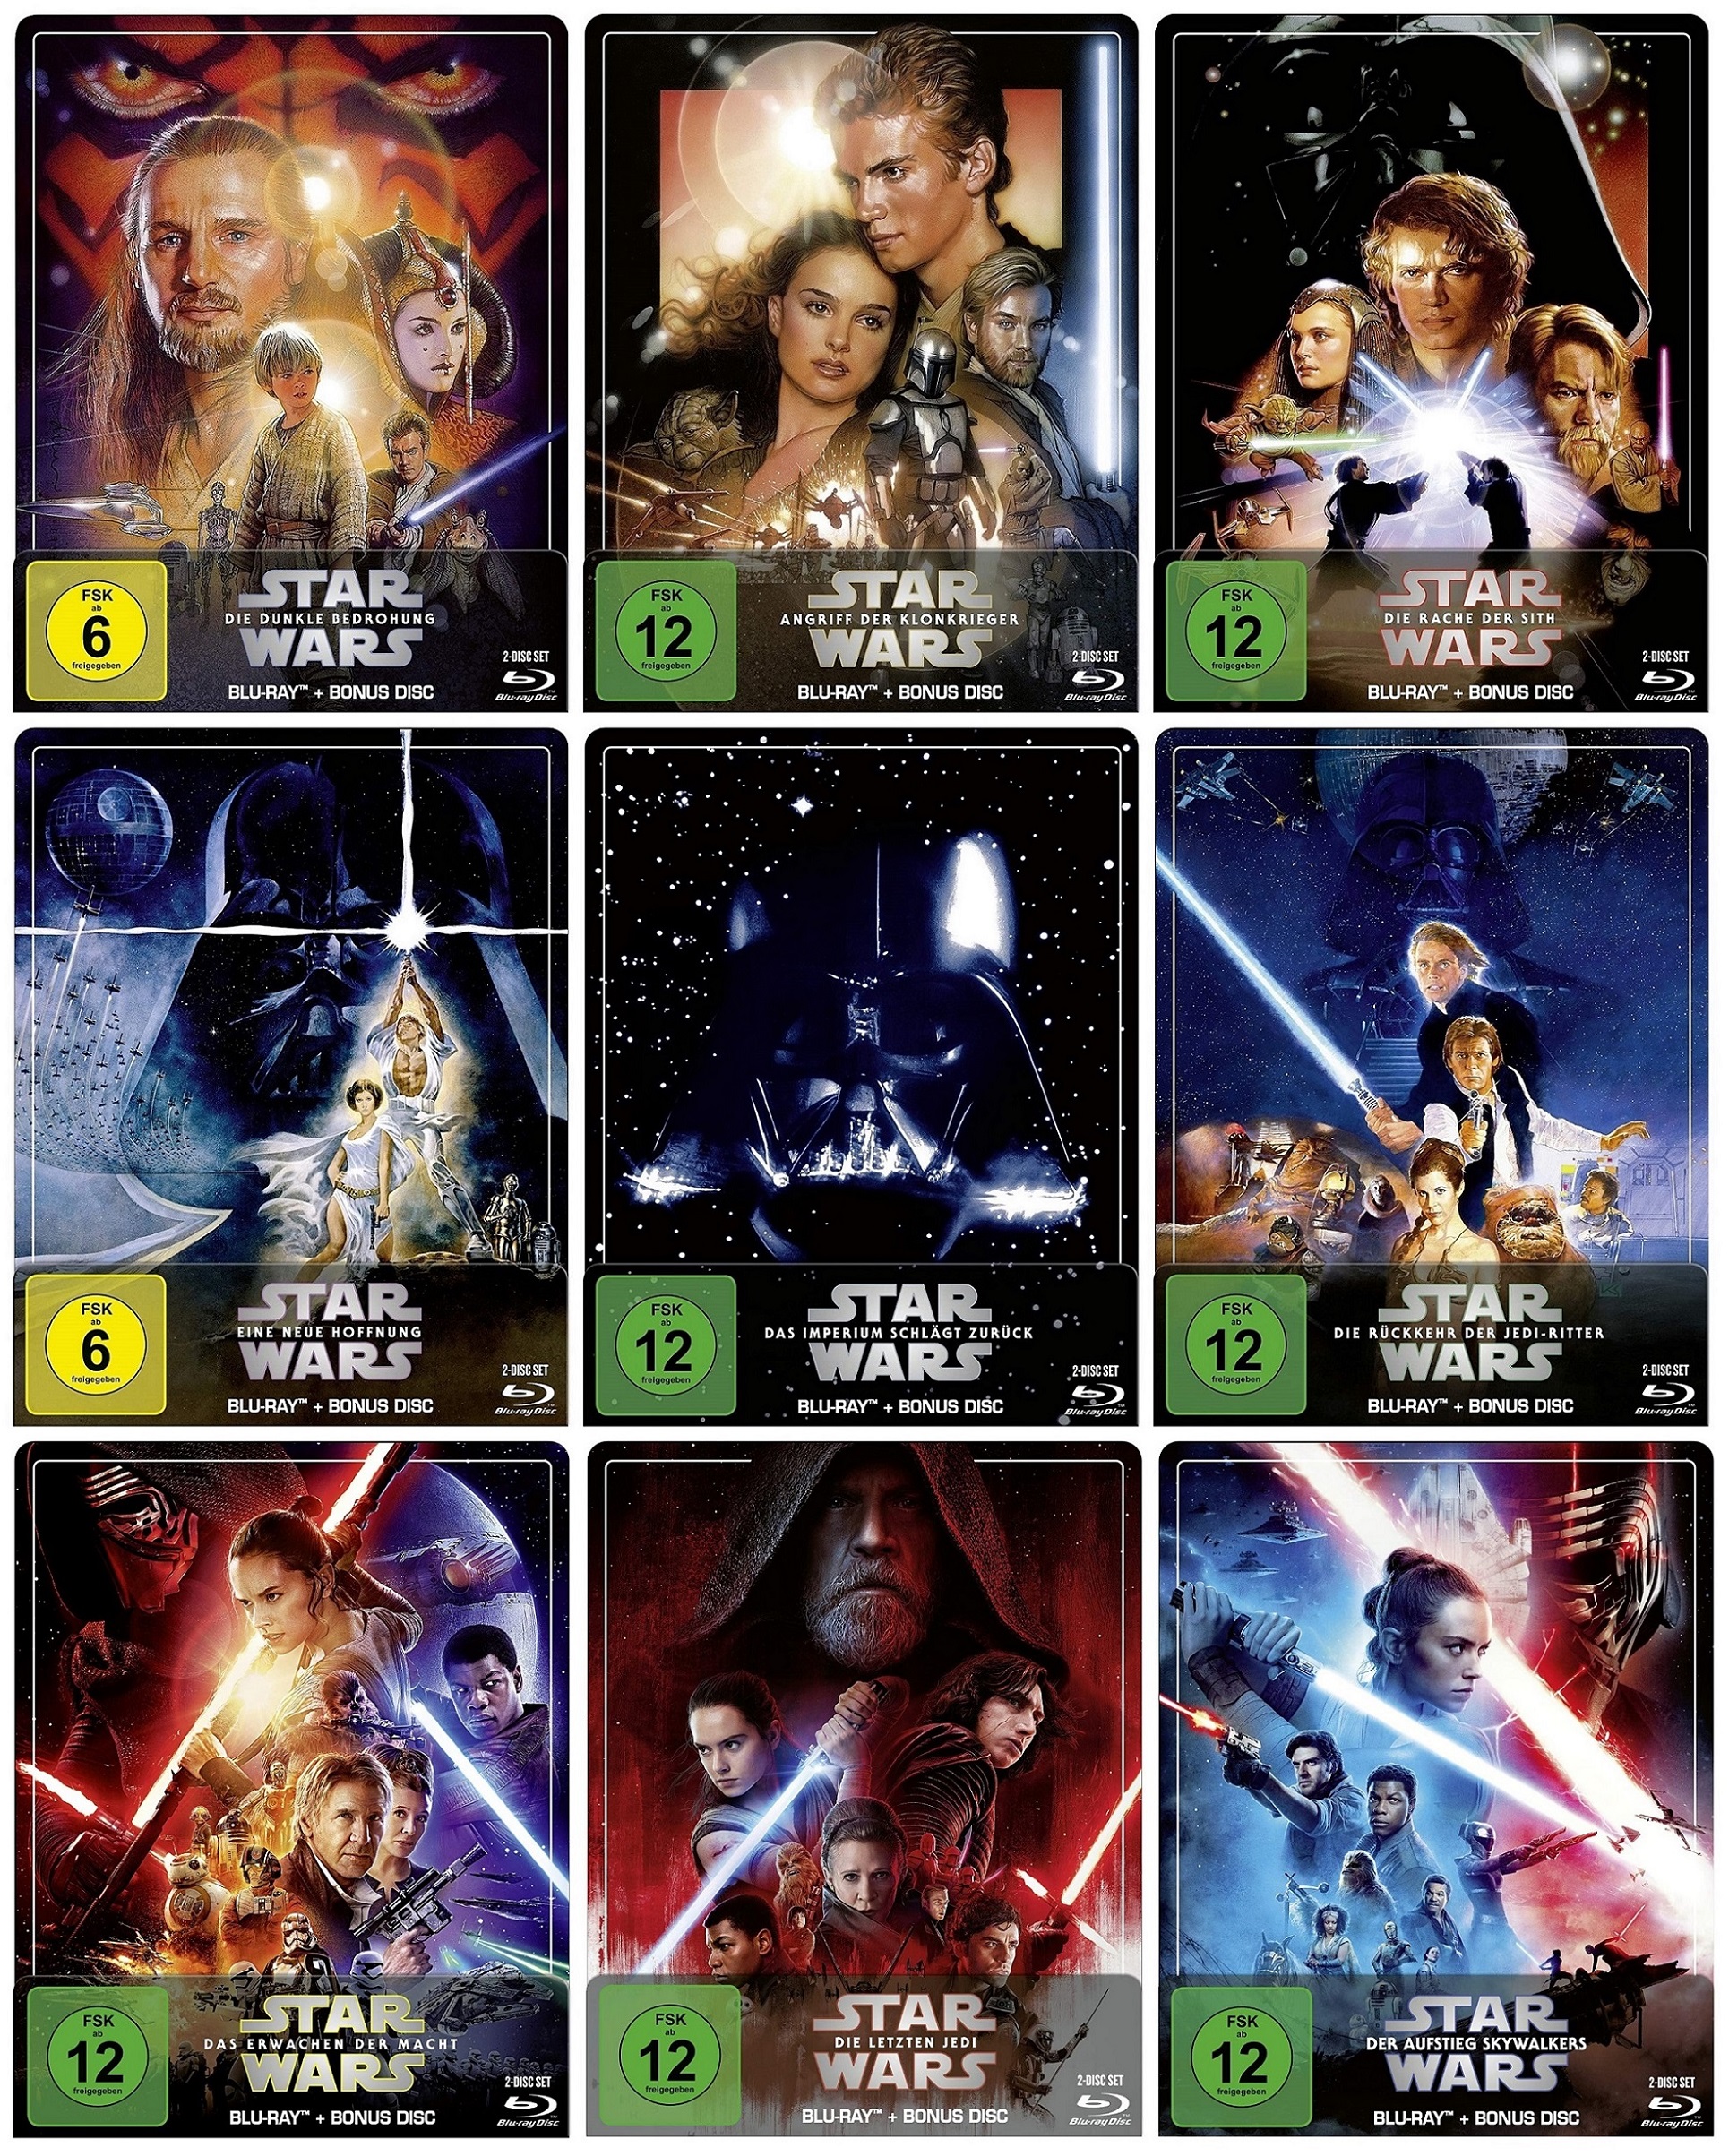 Star Wars: Episode 1+2+3+4+5+6+7+8+9 im Set - Steelbook Edition (Blu-ray)